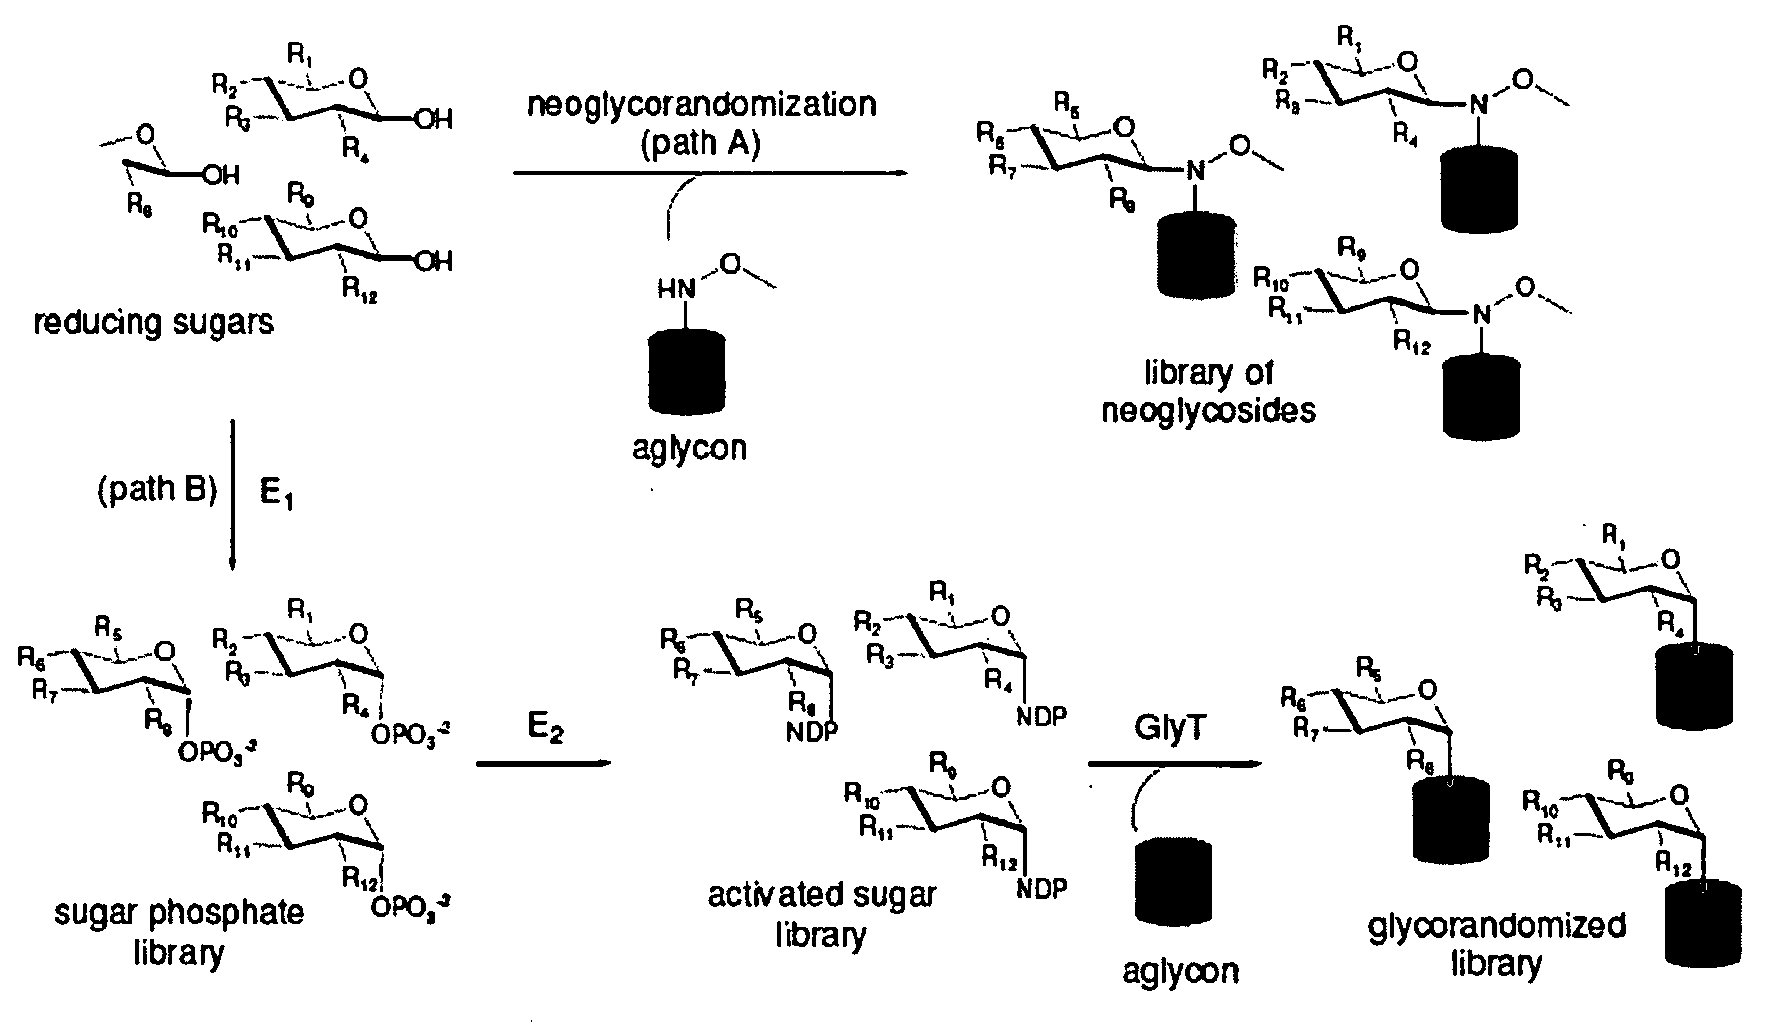 Neoglycorandomization and digitoxin analogs